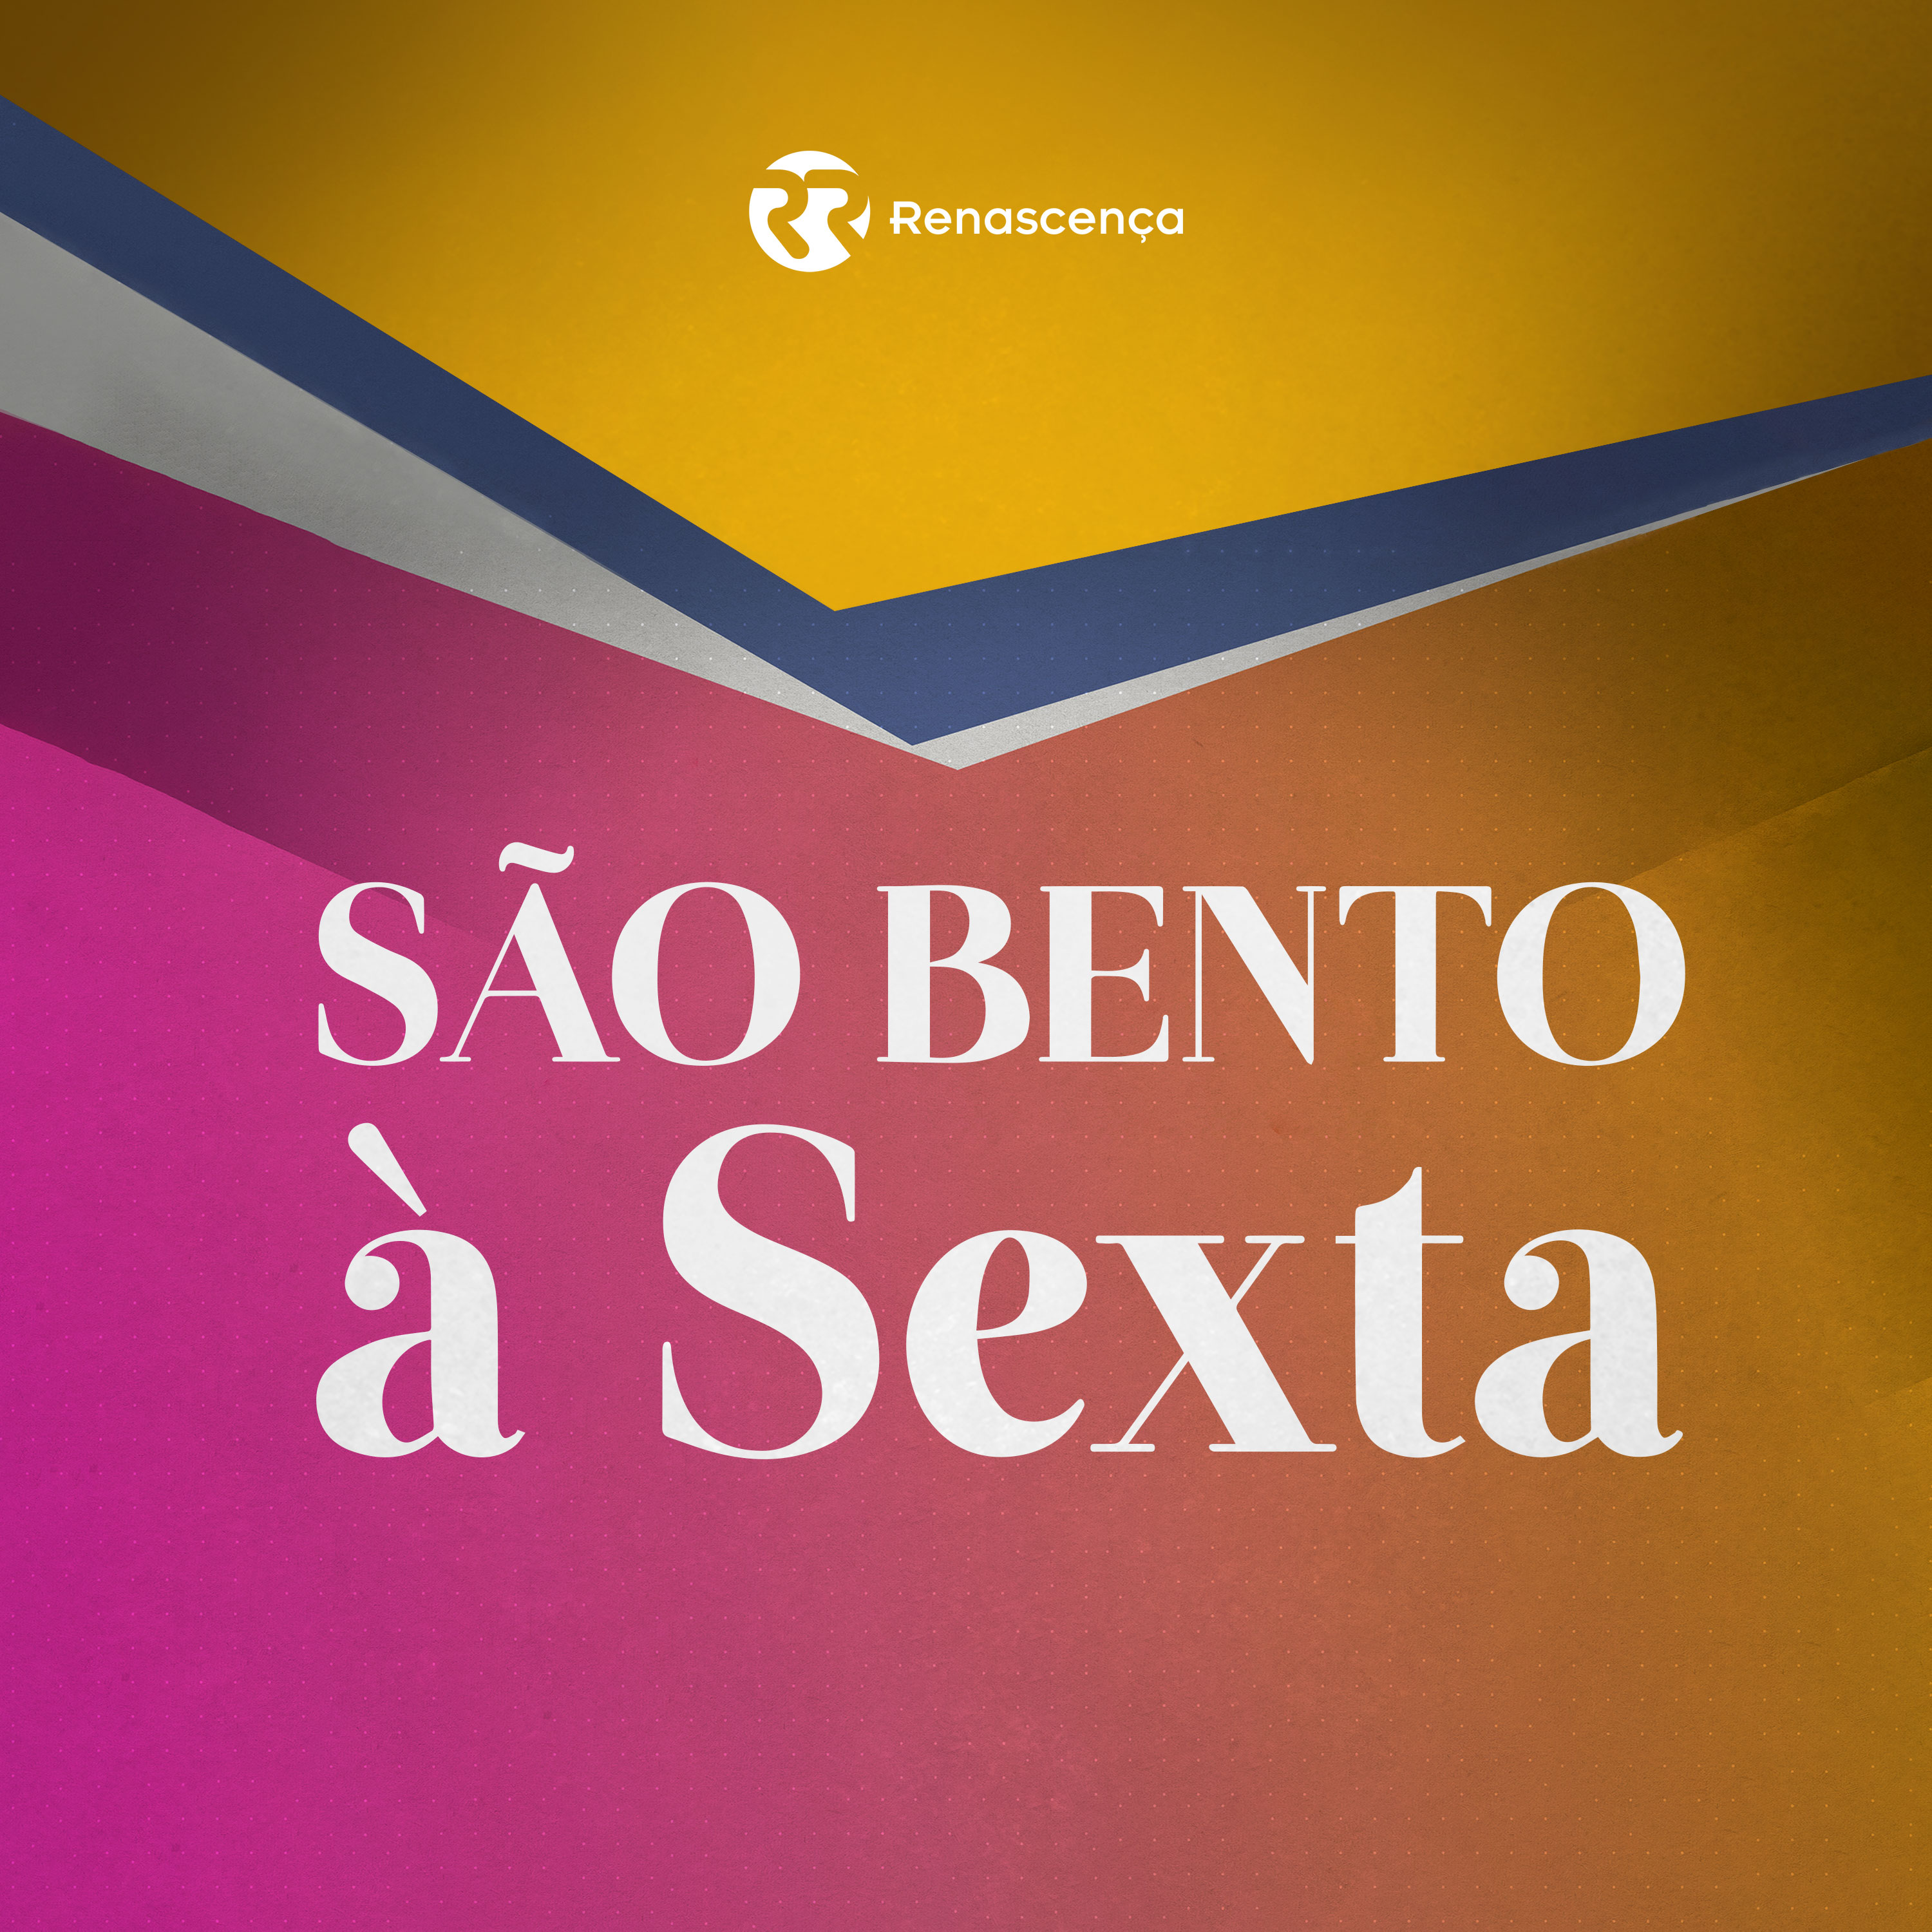 São Bento à Sexta - Rui Rio a malhar, Marcelo a inovar - 19/02/2021